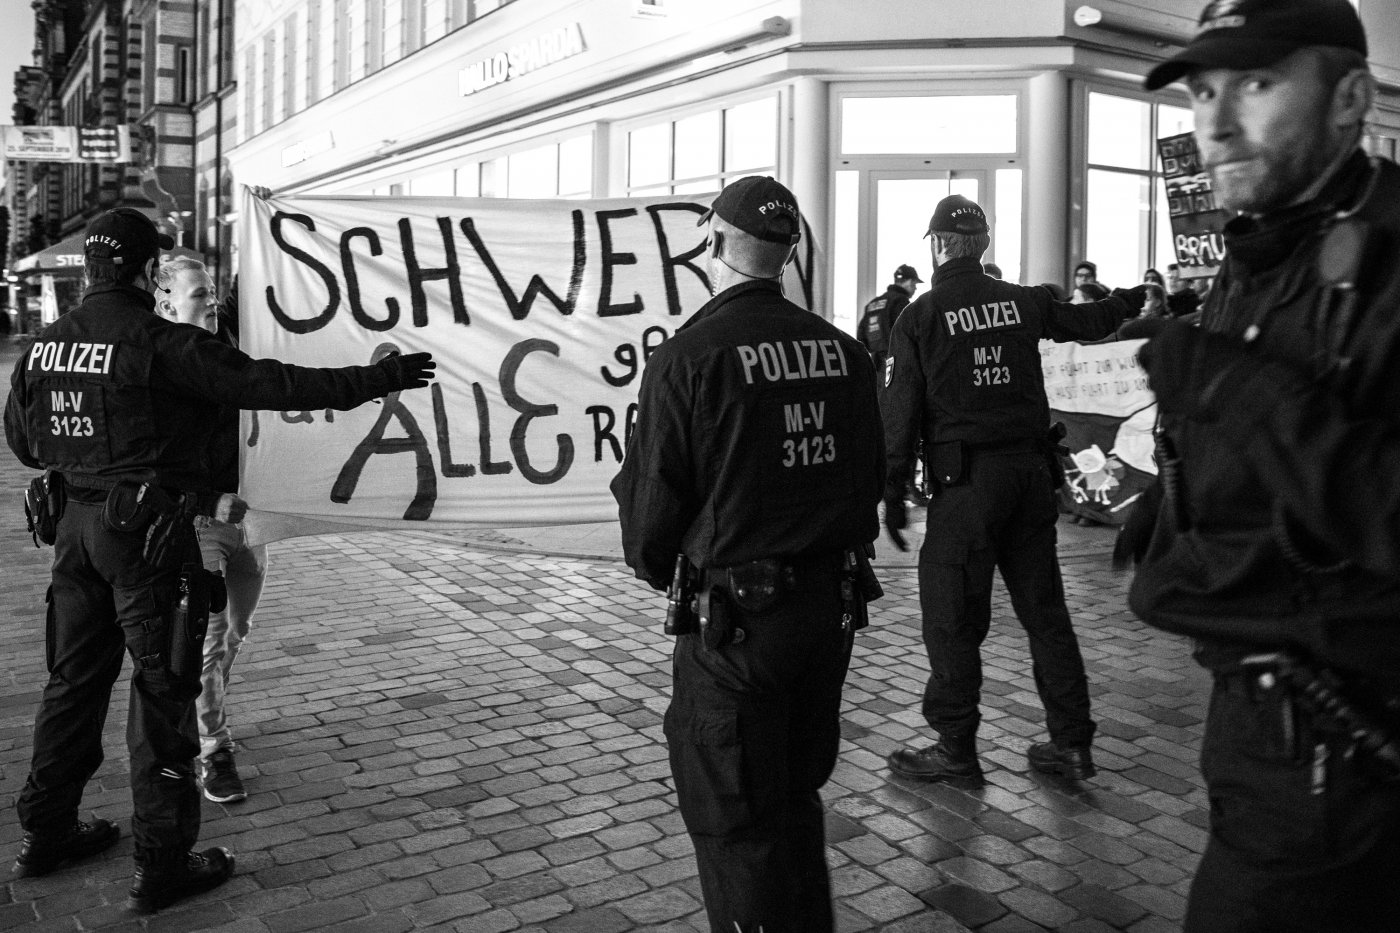 Polizei und Demonstrant in Schwerin 